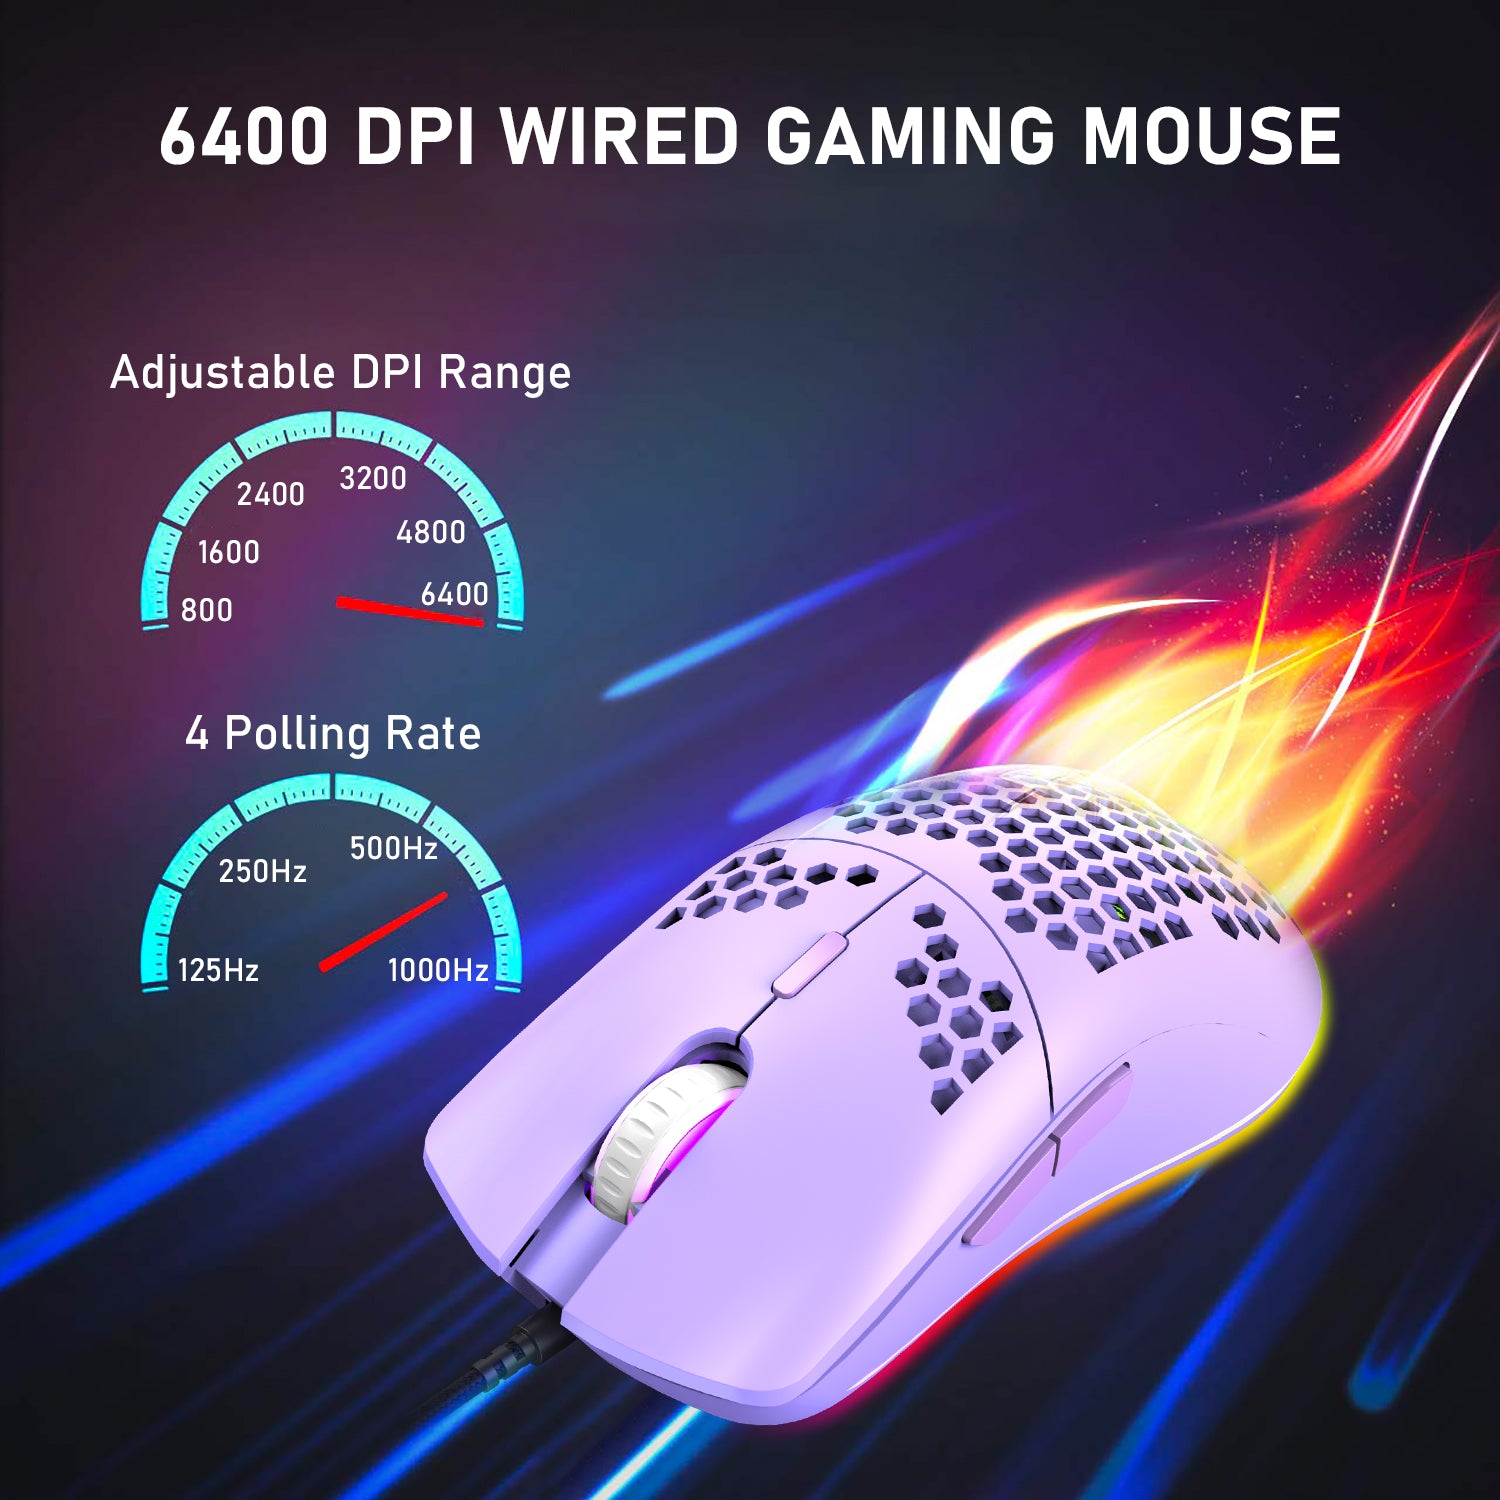 有線軽量ゲーミングマウス、7ボタンのプログラム可能なドライバーを備えた6 RGBバックライト付きマウス、6400DPIコンピューターマウス、PCゲーマー用の超軽量ハニカムシェルUltraweaveケーブルマウス、Xbox、PS4（青）